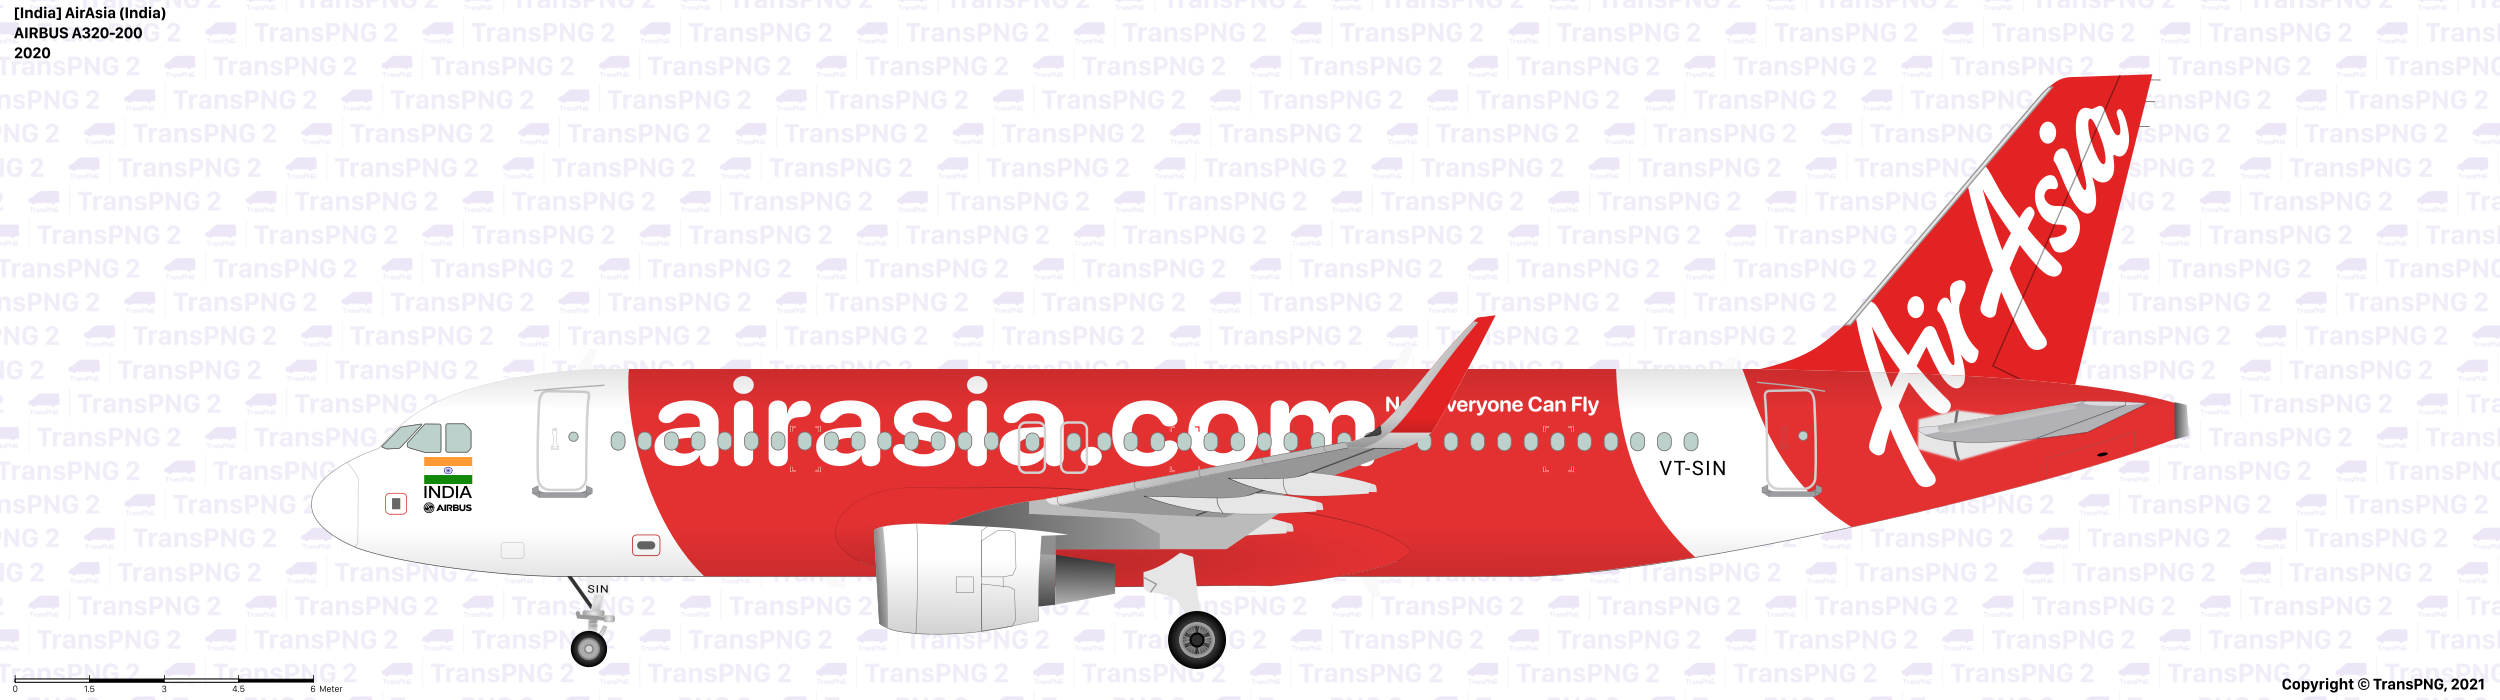 [25126] 印度亞洲航空 51202744534_7096760edb_o